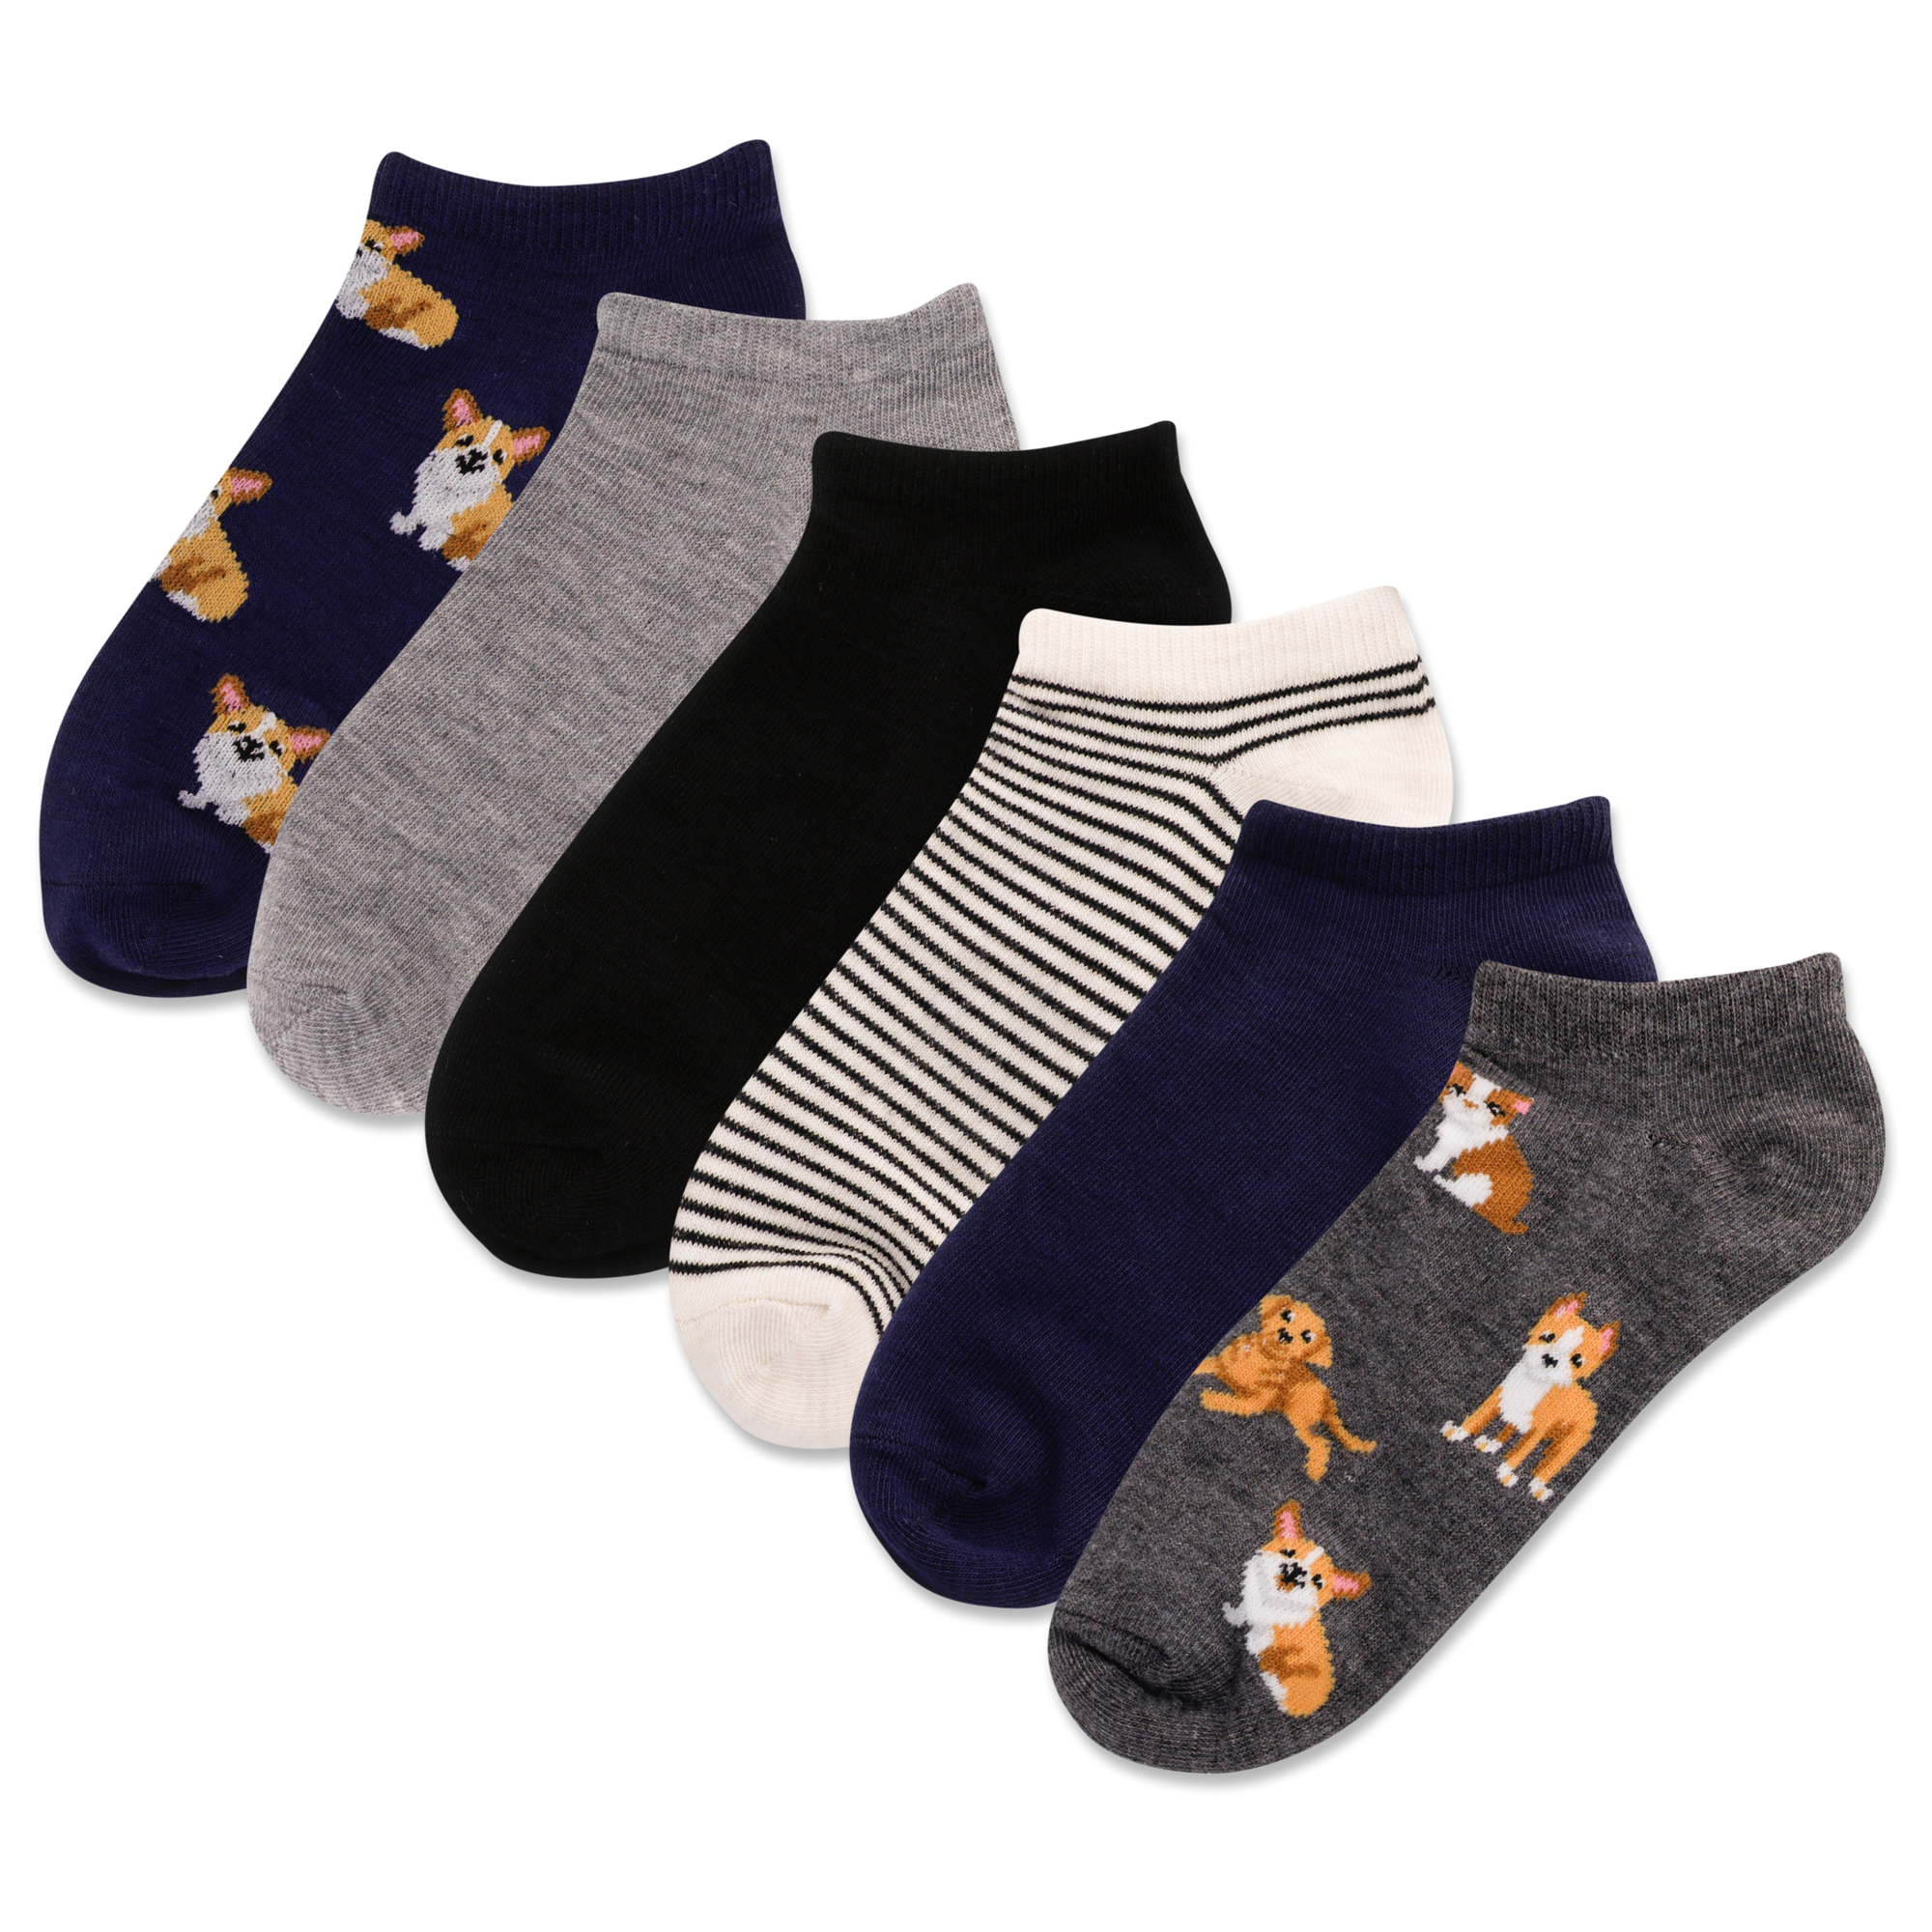 HOTSOX Women\'s Cut Socks 6 Pack Low Dogs